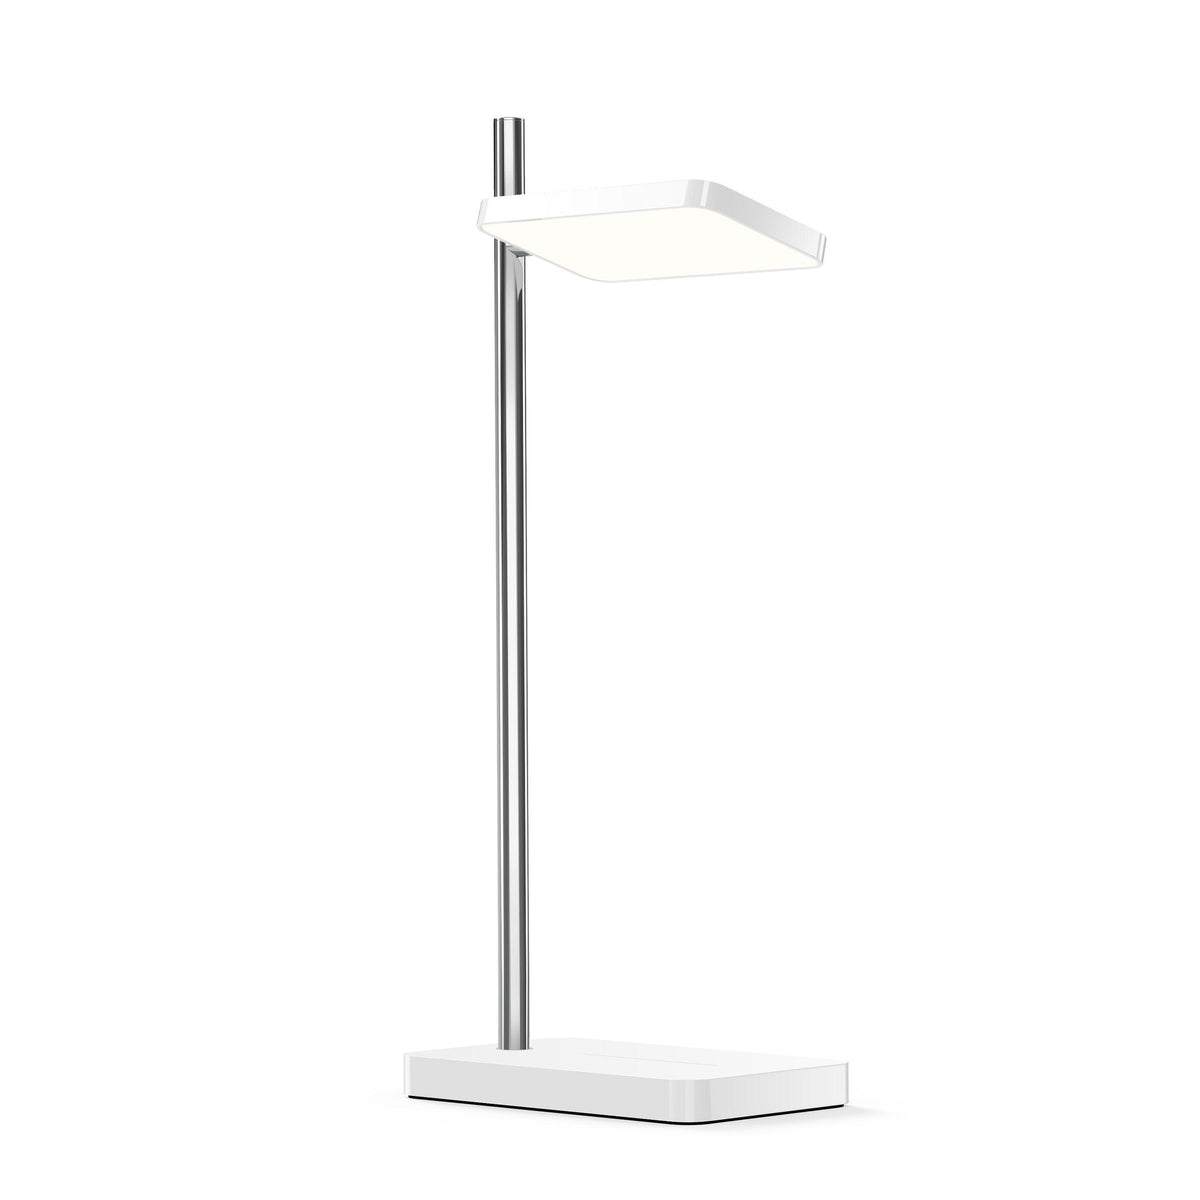 Pablo Designs - Talia Table Lamp - TALI TBL WHT/SLV | Montreal Lighting & Hardware